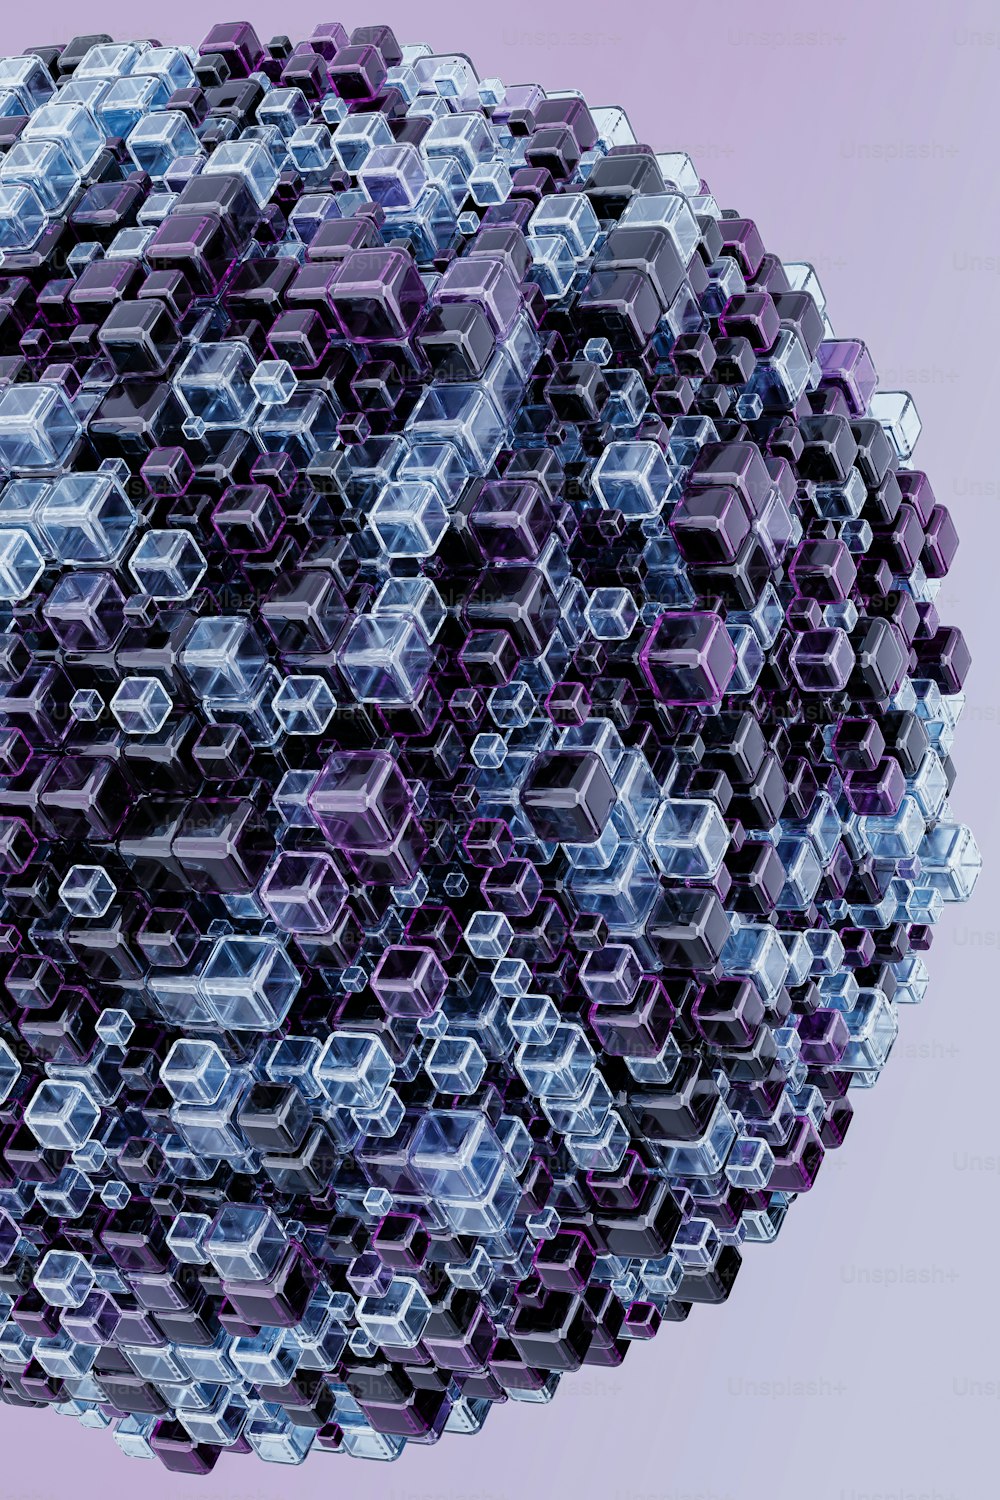 uma esfera feita de cubos hexagonais em um fundo roxo